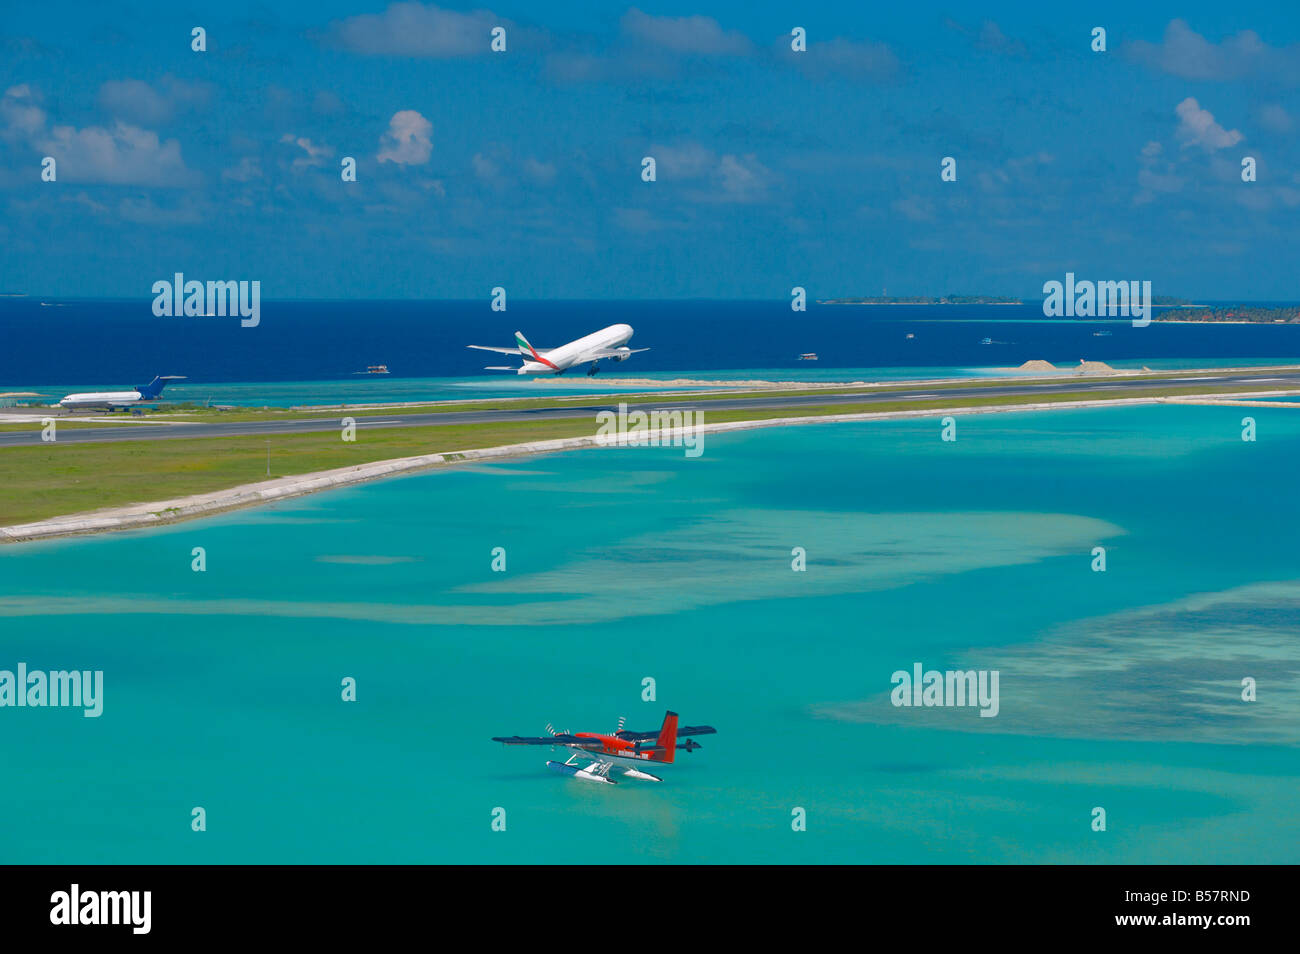 Jet passagers décollant de l'aéroport international de Malé, Maldives et air taxi prêt à décoller, Maldives, océan Indien, Asie Banque D'Images